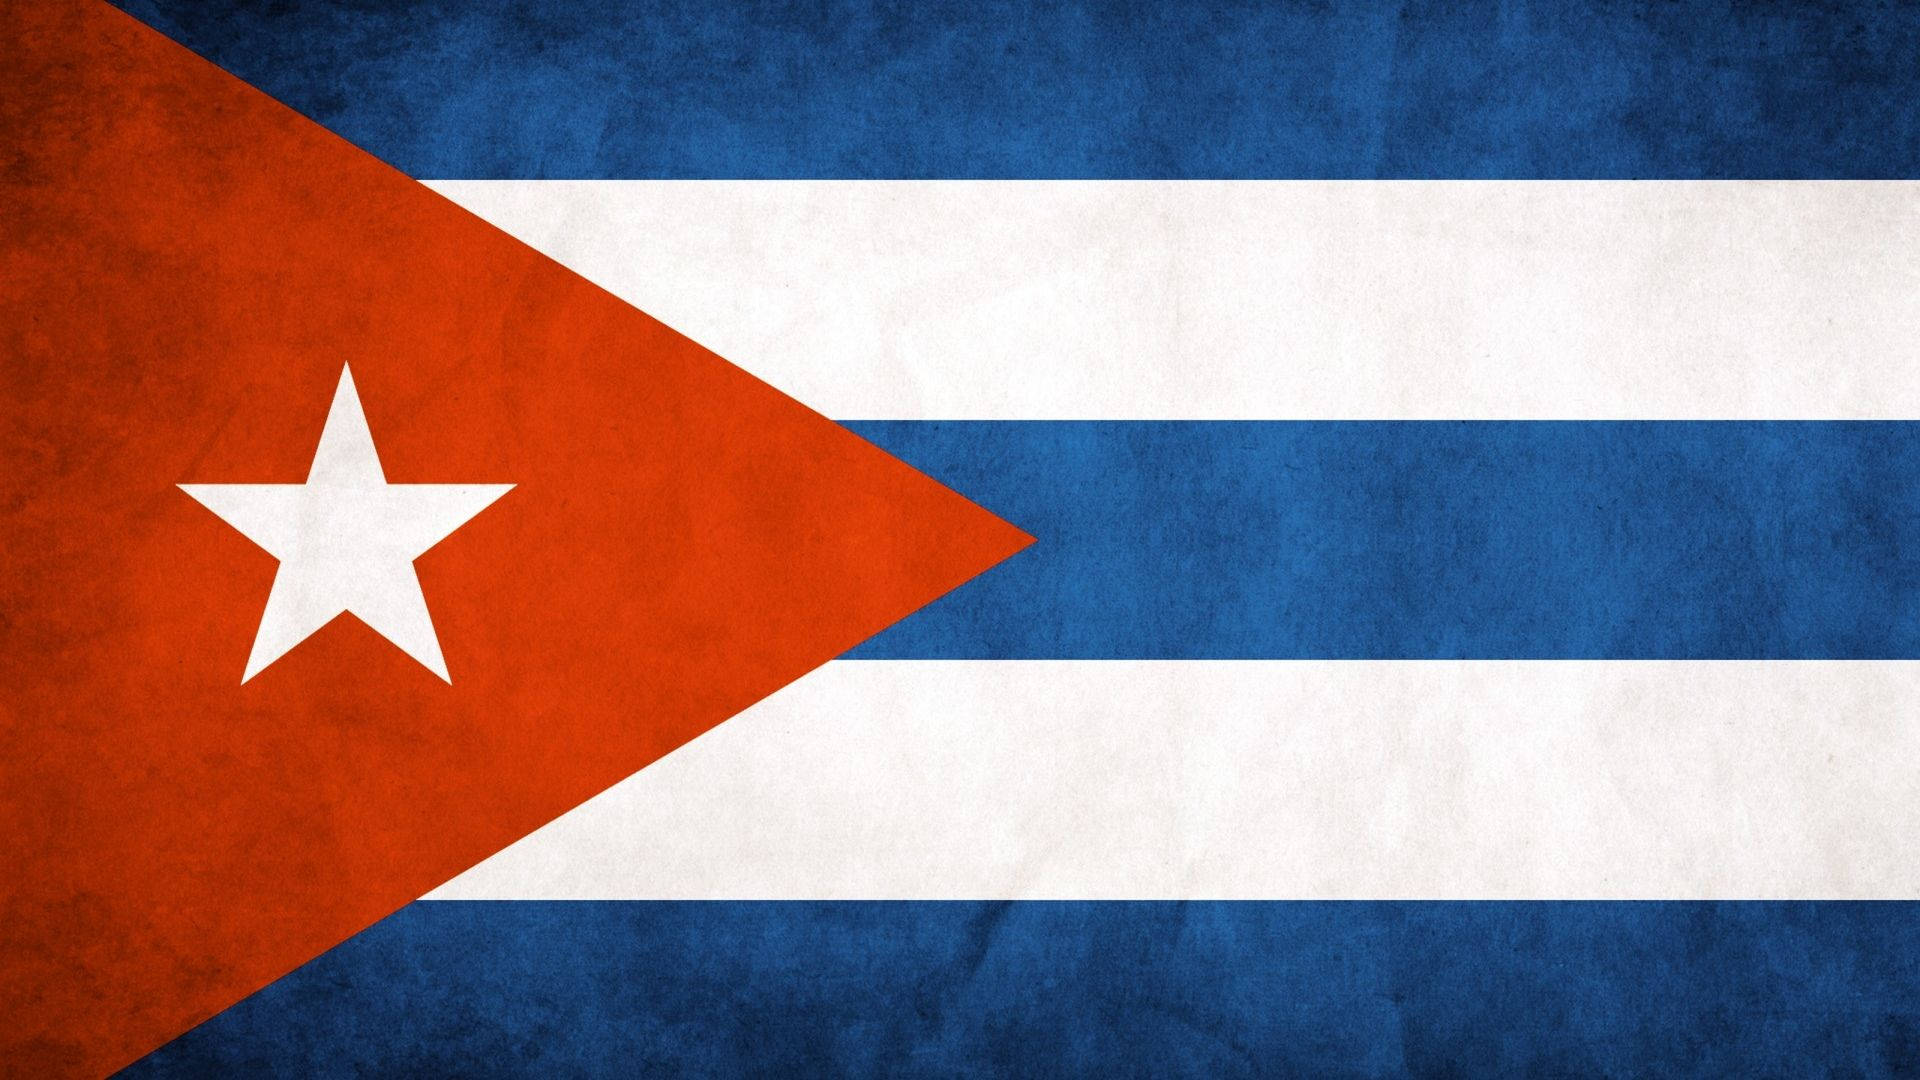 Flag Of Cuba Wallpaper